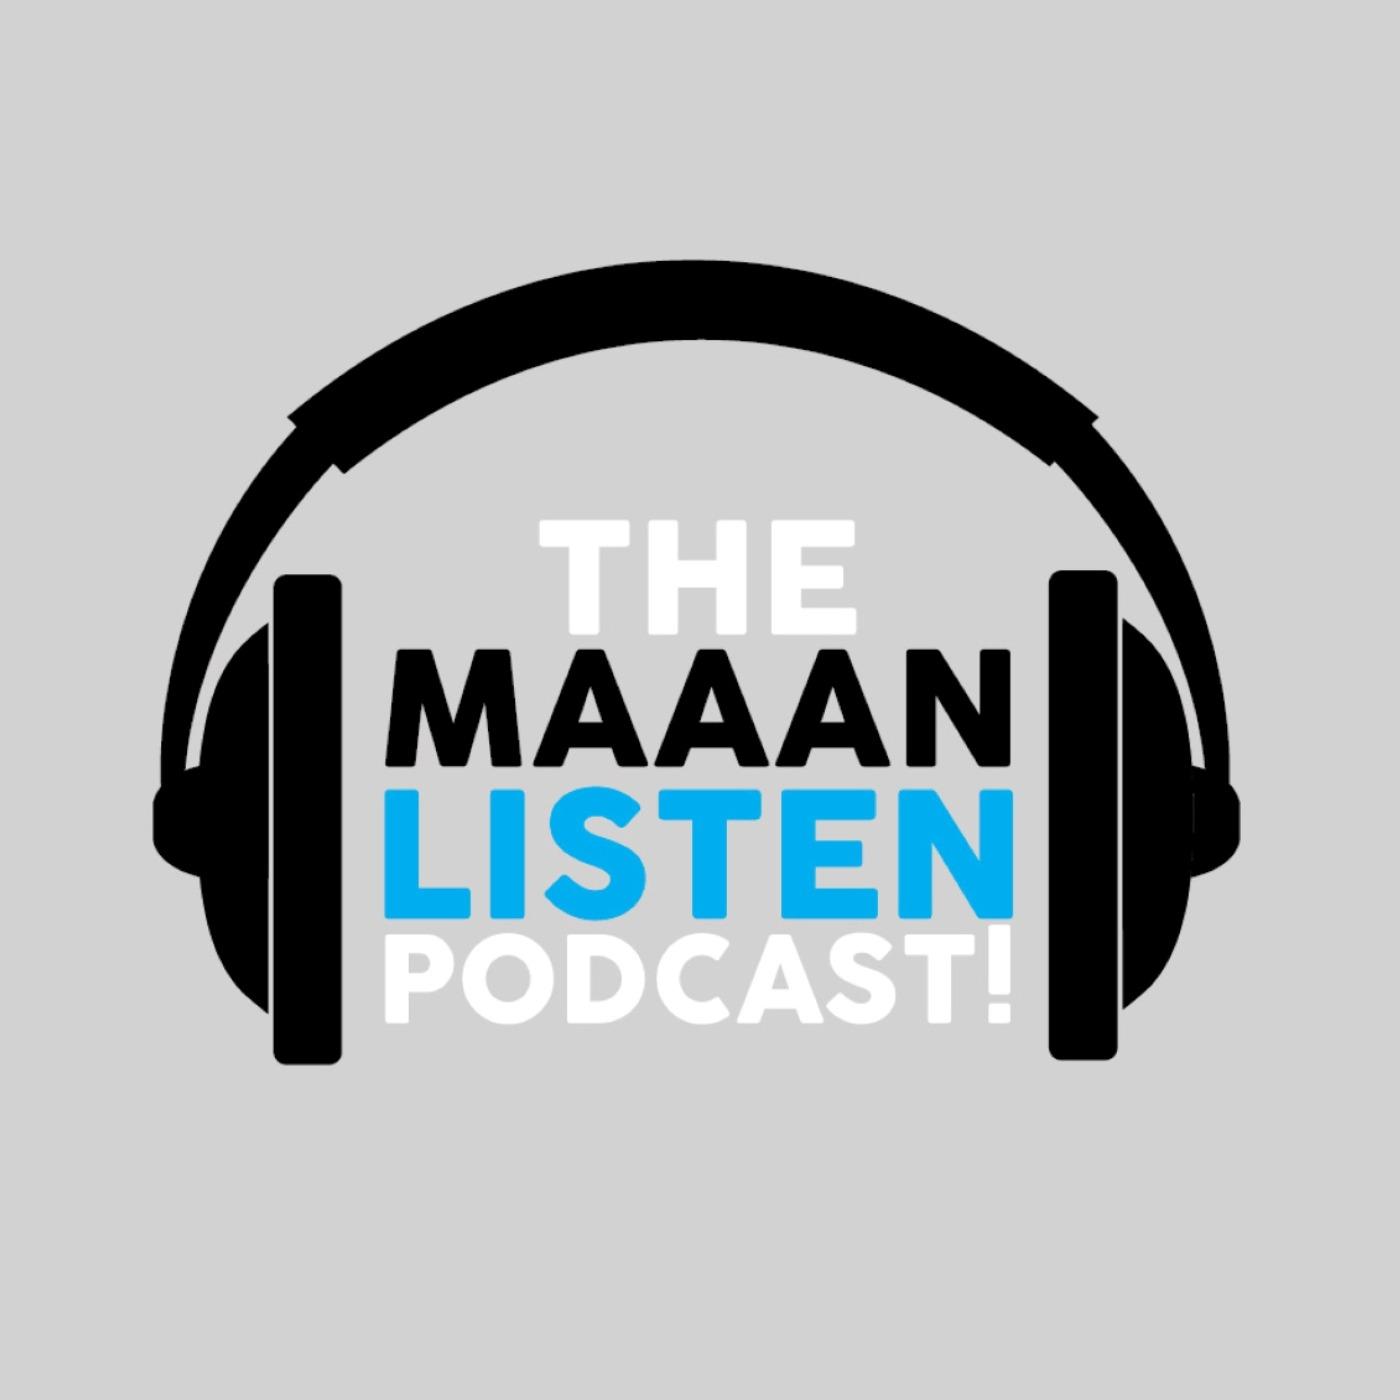 TMLP: The "Maaan, Listen!" Podcast